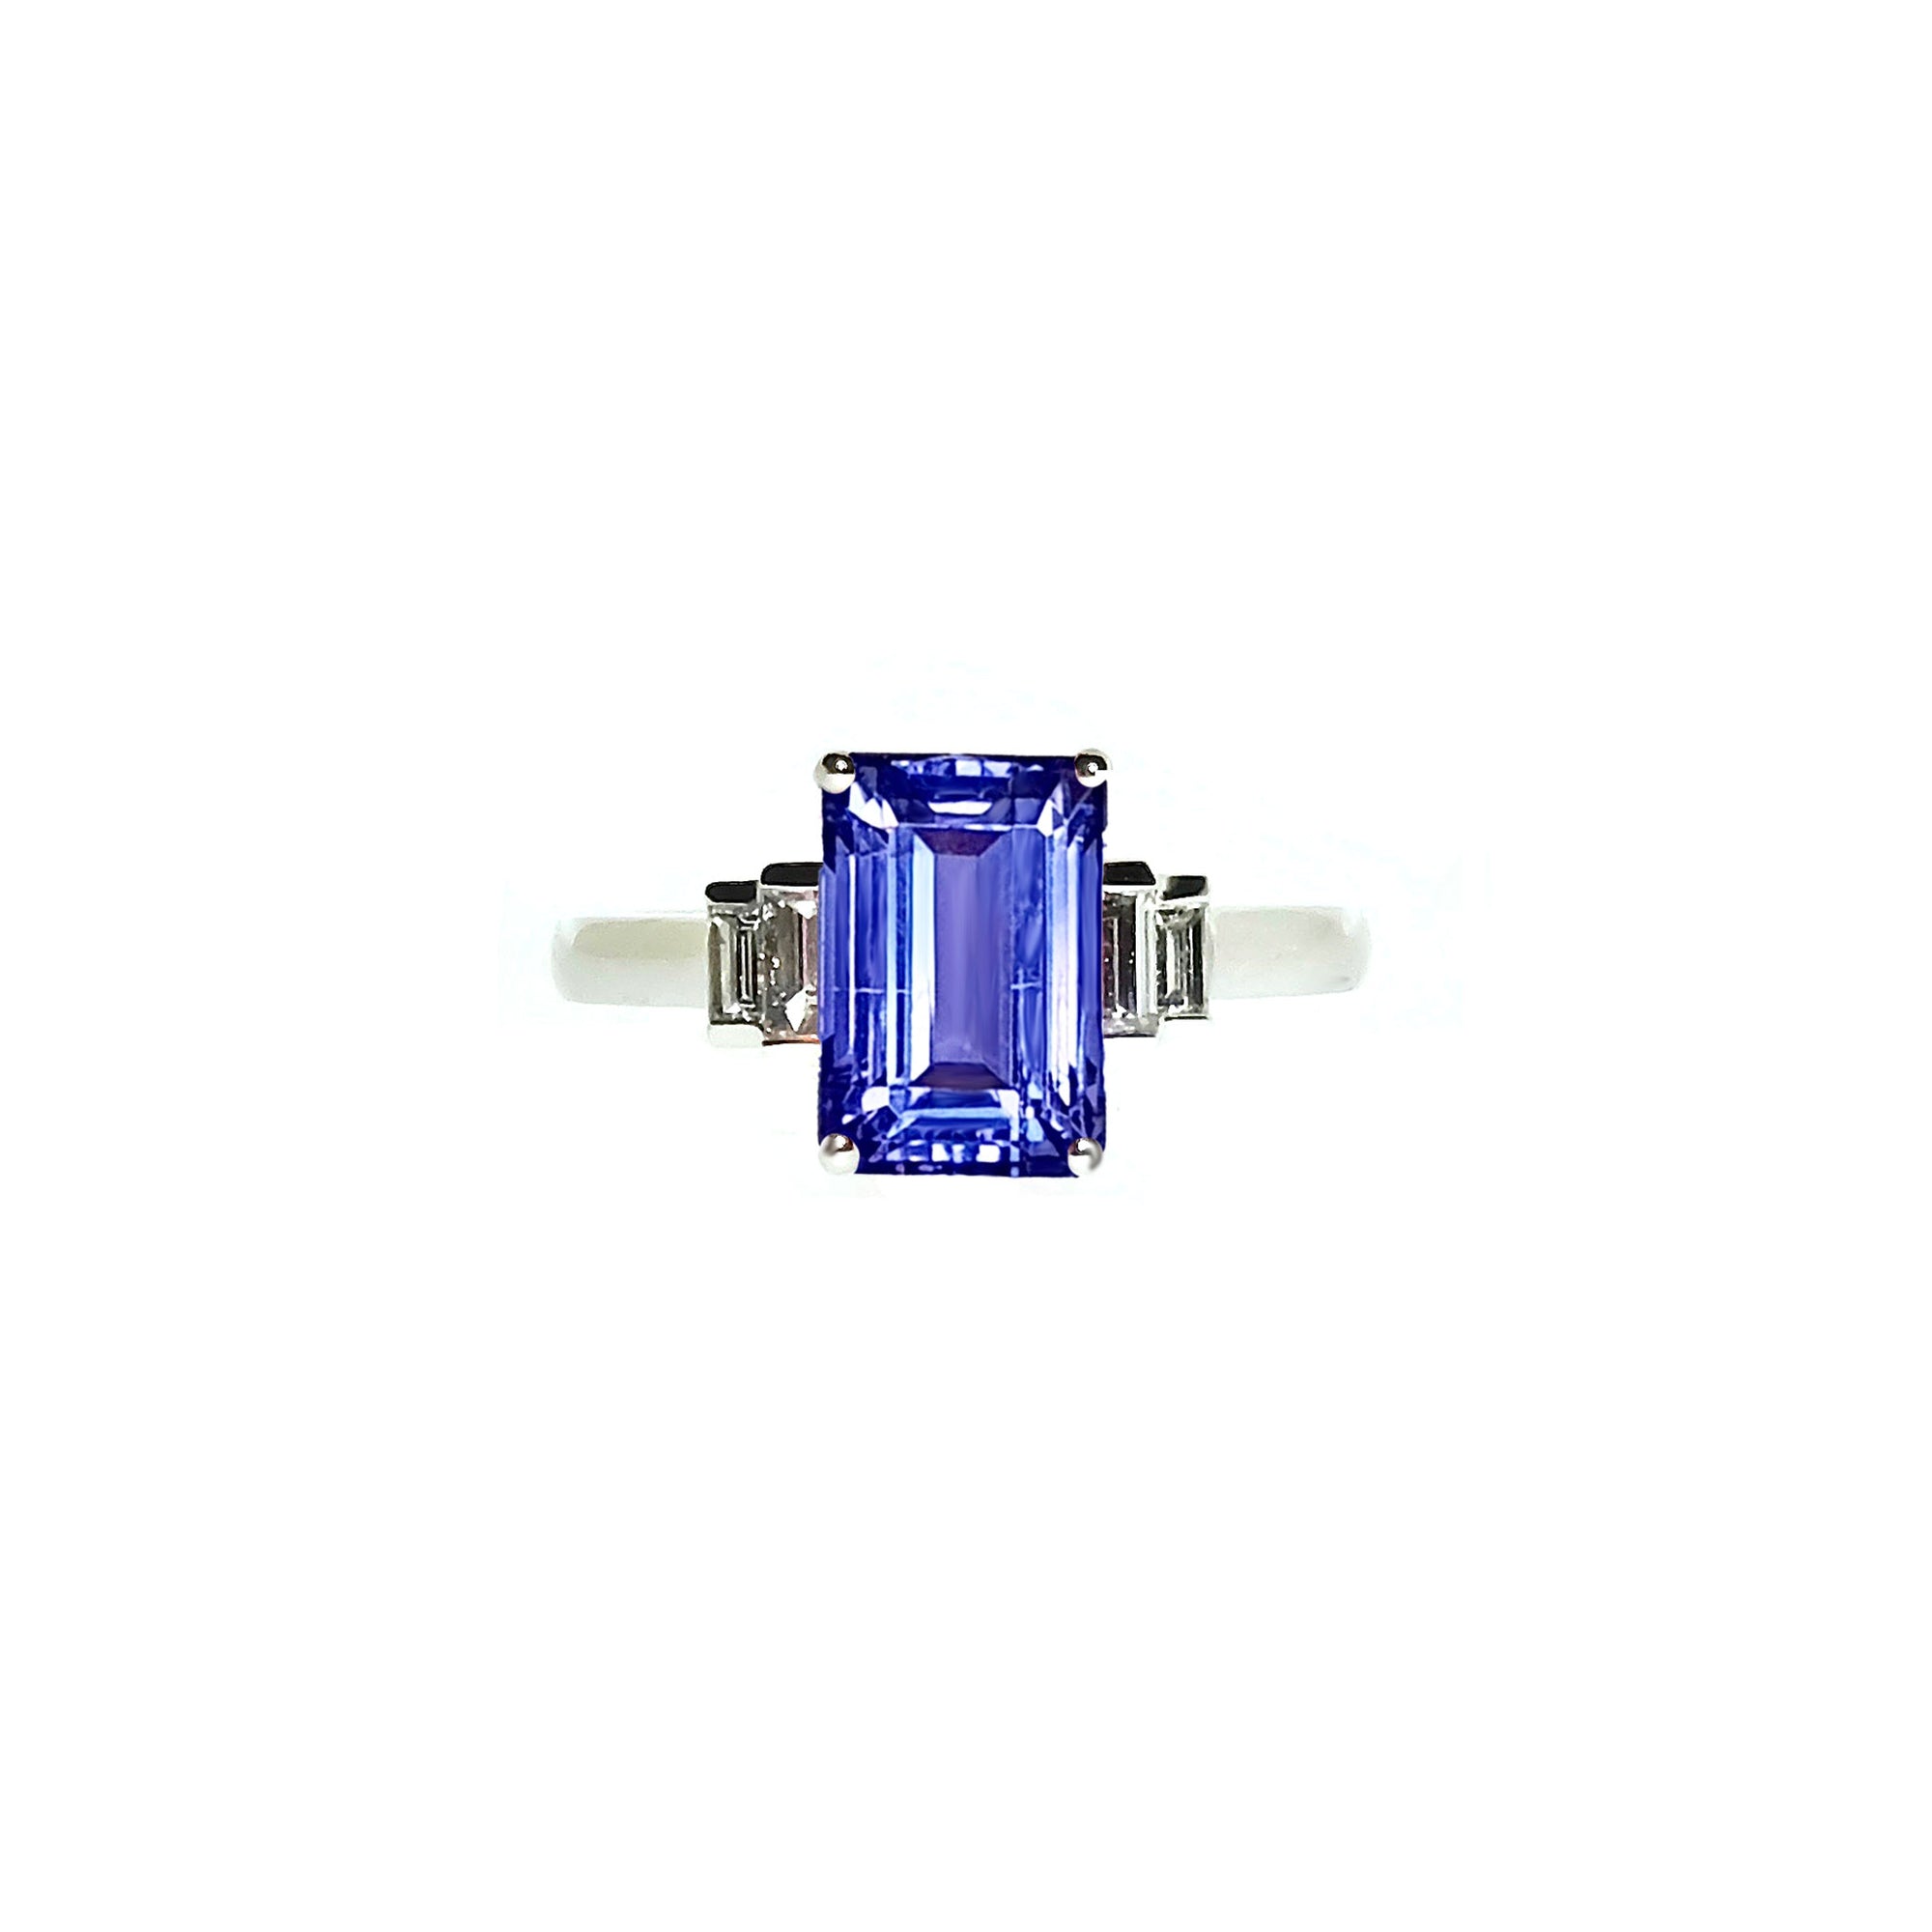 Shangrila Baguette Five Stone Ring - Tanzanite Emerald 2019-228